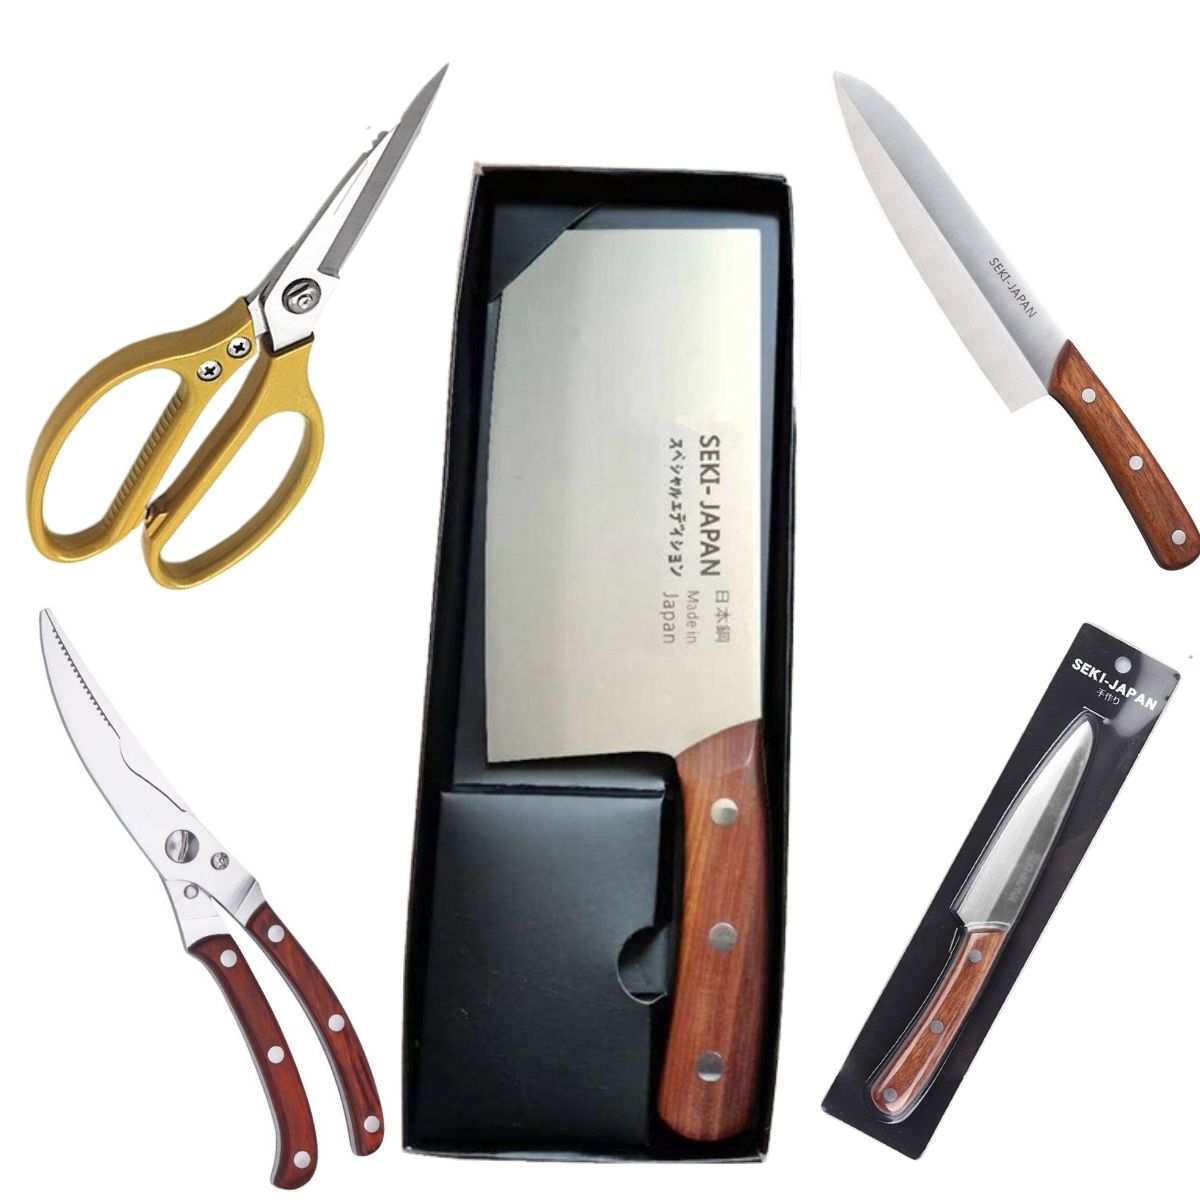 Bộ dao làm bếp Nhật Bản 5 món cao cấp SEKl JAPAN làm từ thép không rỉ 4CR13 Hàng nhật khẩu bao gồm Dao chặt Dao Thái Kéo Cắt